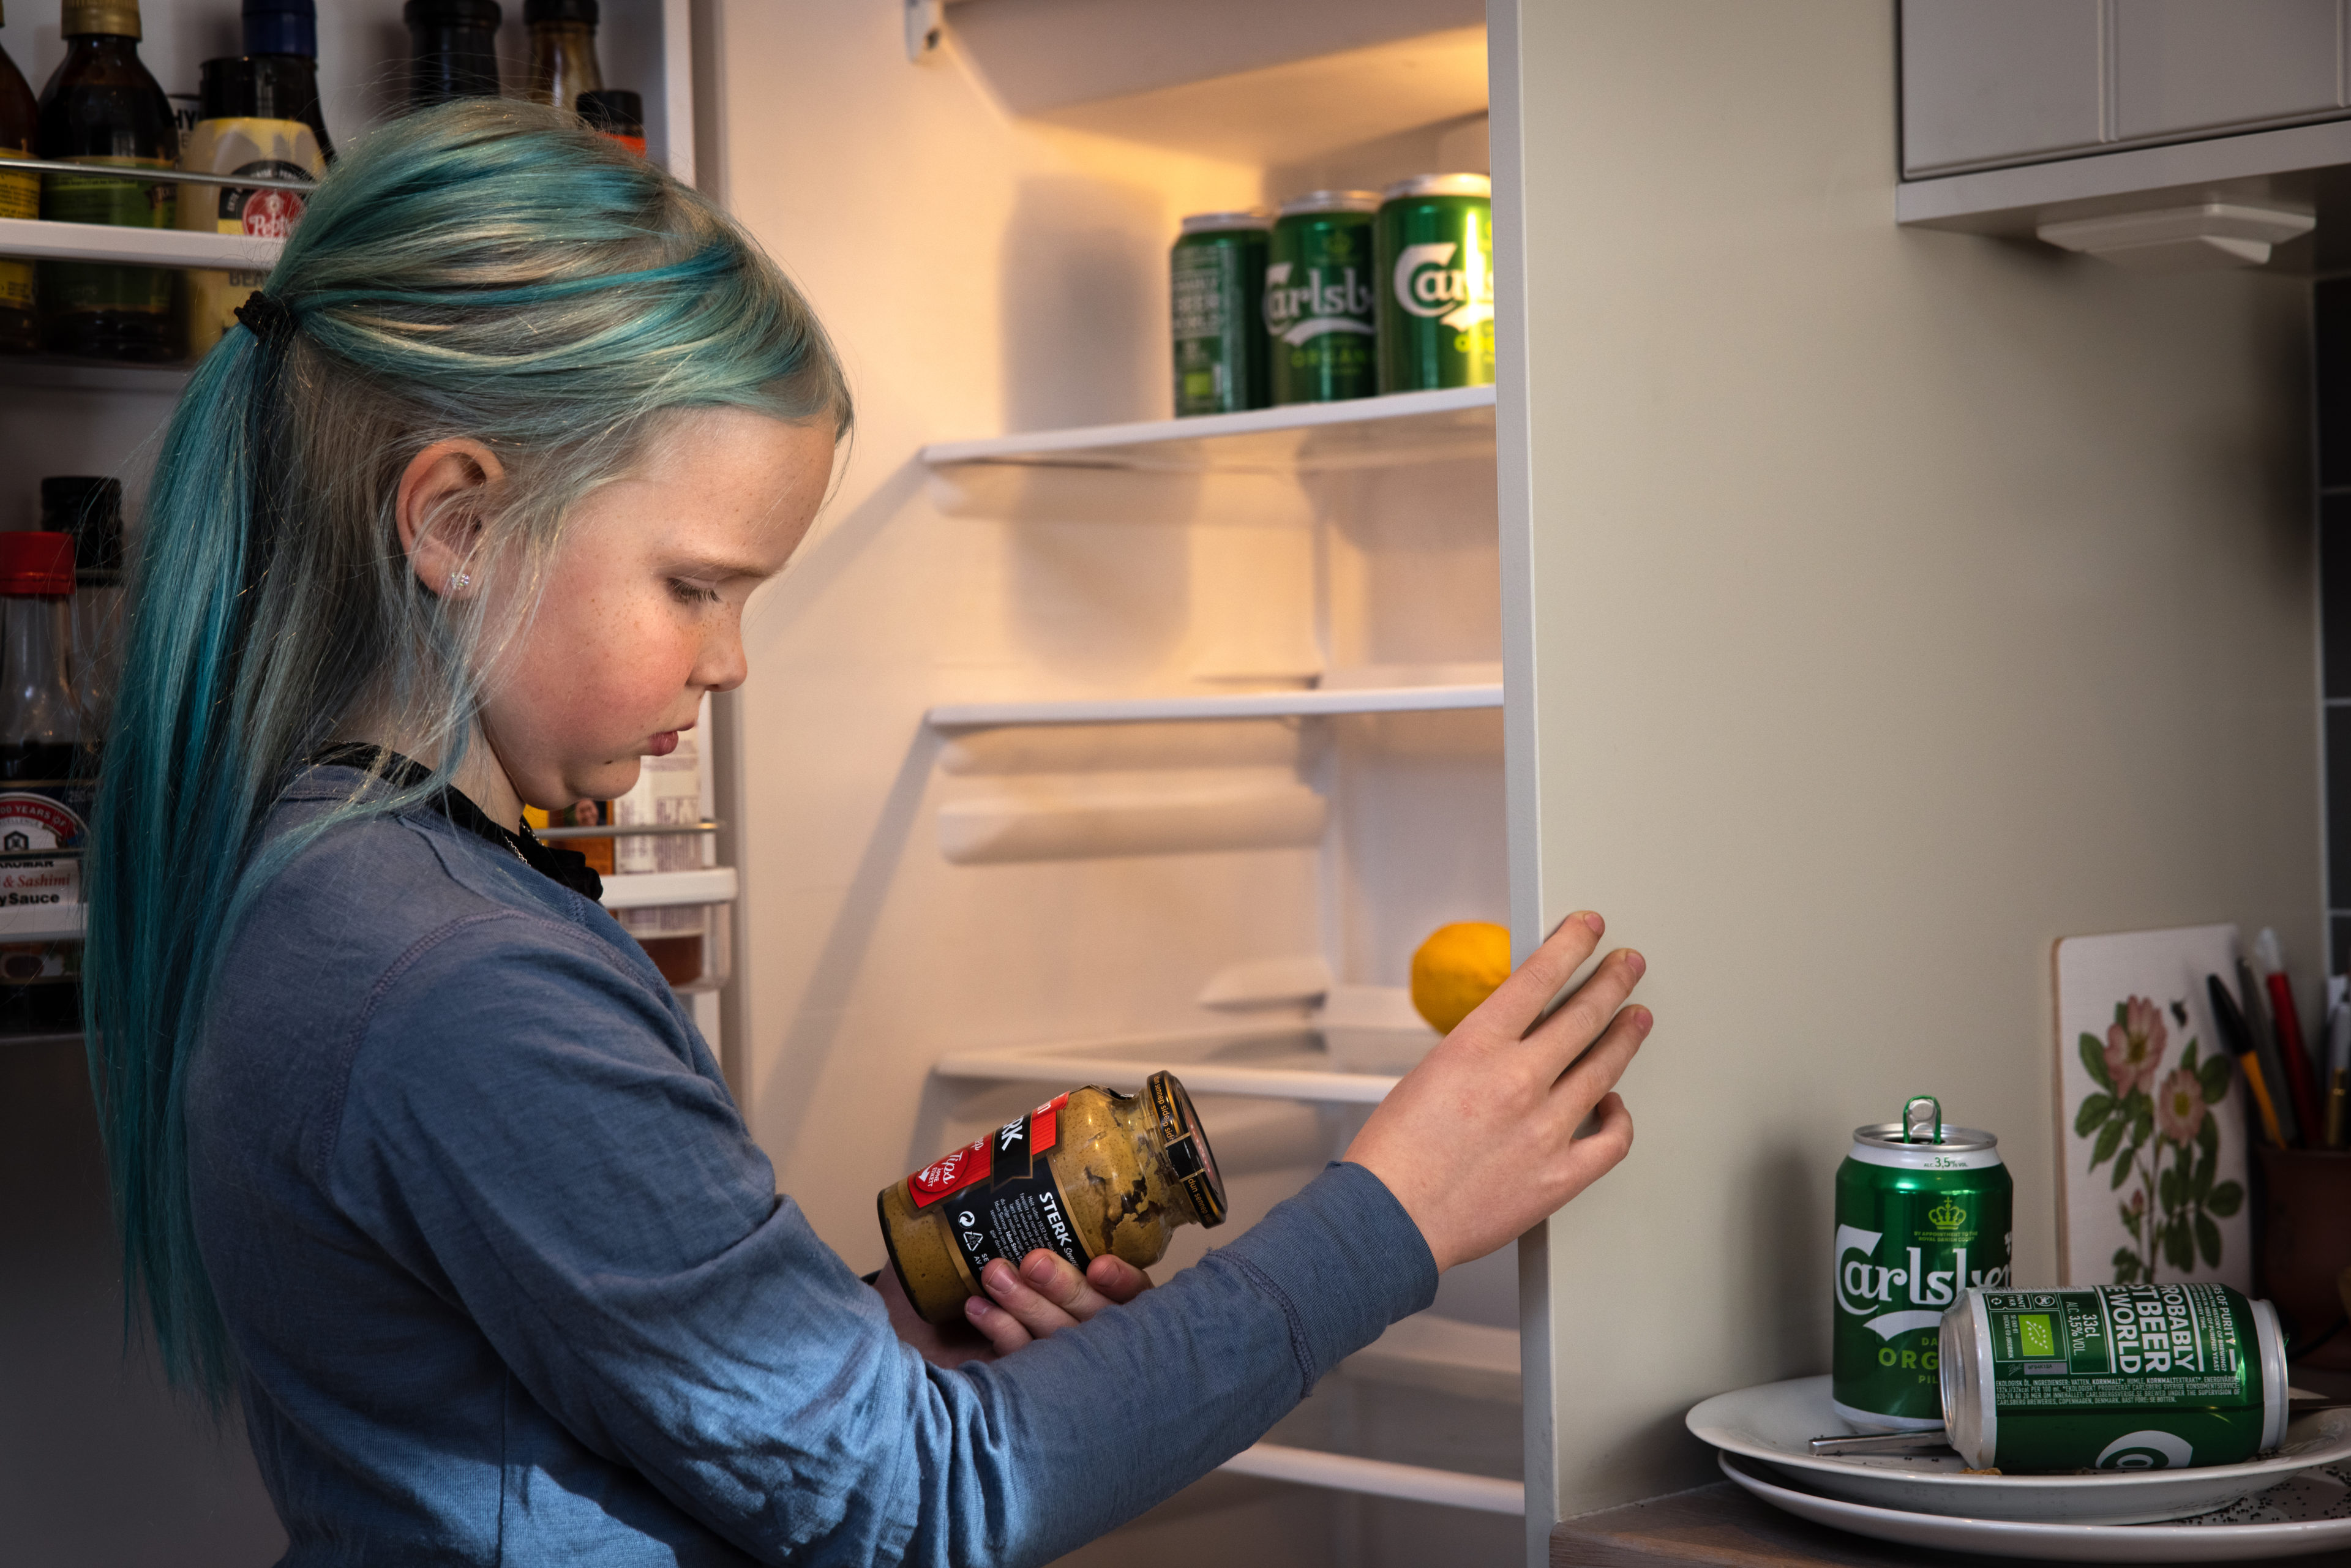 En jente i 10-årsalderen med blått hår leter fortvilet etter mat i et tomt kjøleskap. Kjøleskapet rommer bare øl, sennep og en stakkarslig sitron.